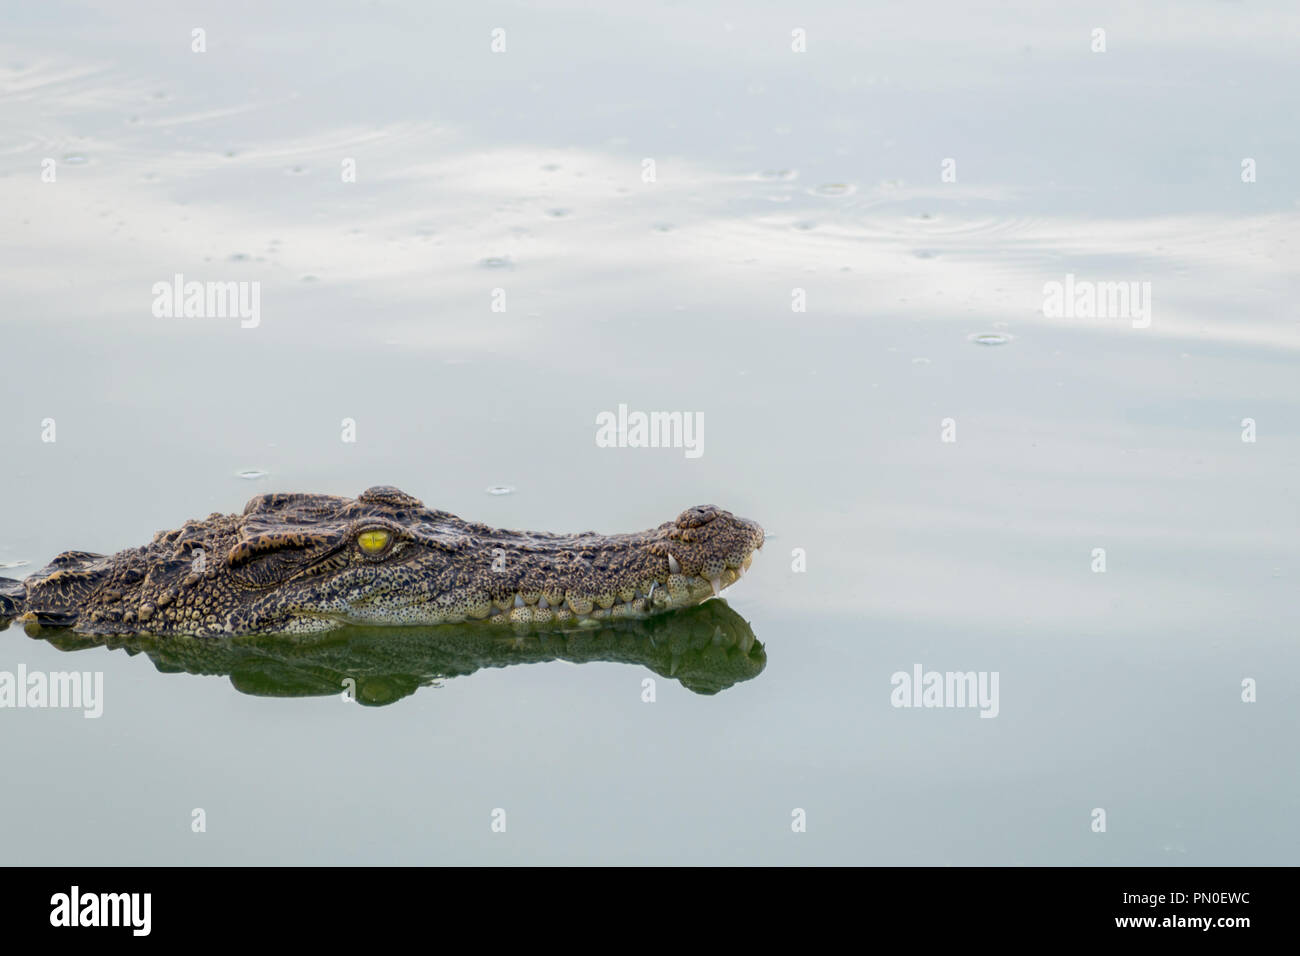 Wildlife crocodile galleggianti sull'acqua e in attesa di caccia un animale nel fiume di animali selvatici e la natura del concetto. Foto Stock